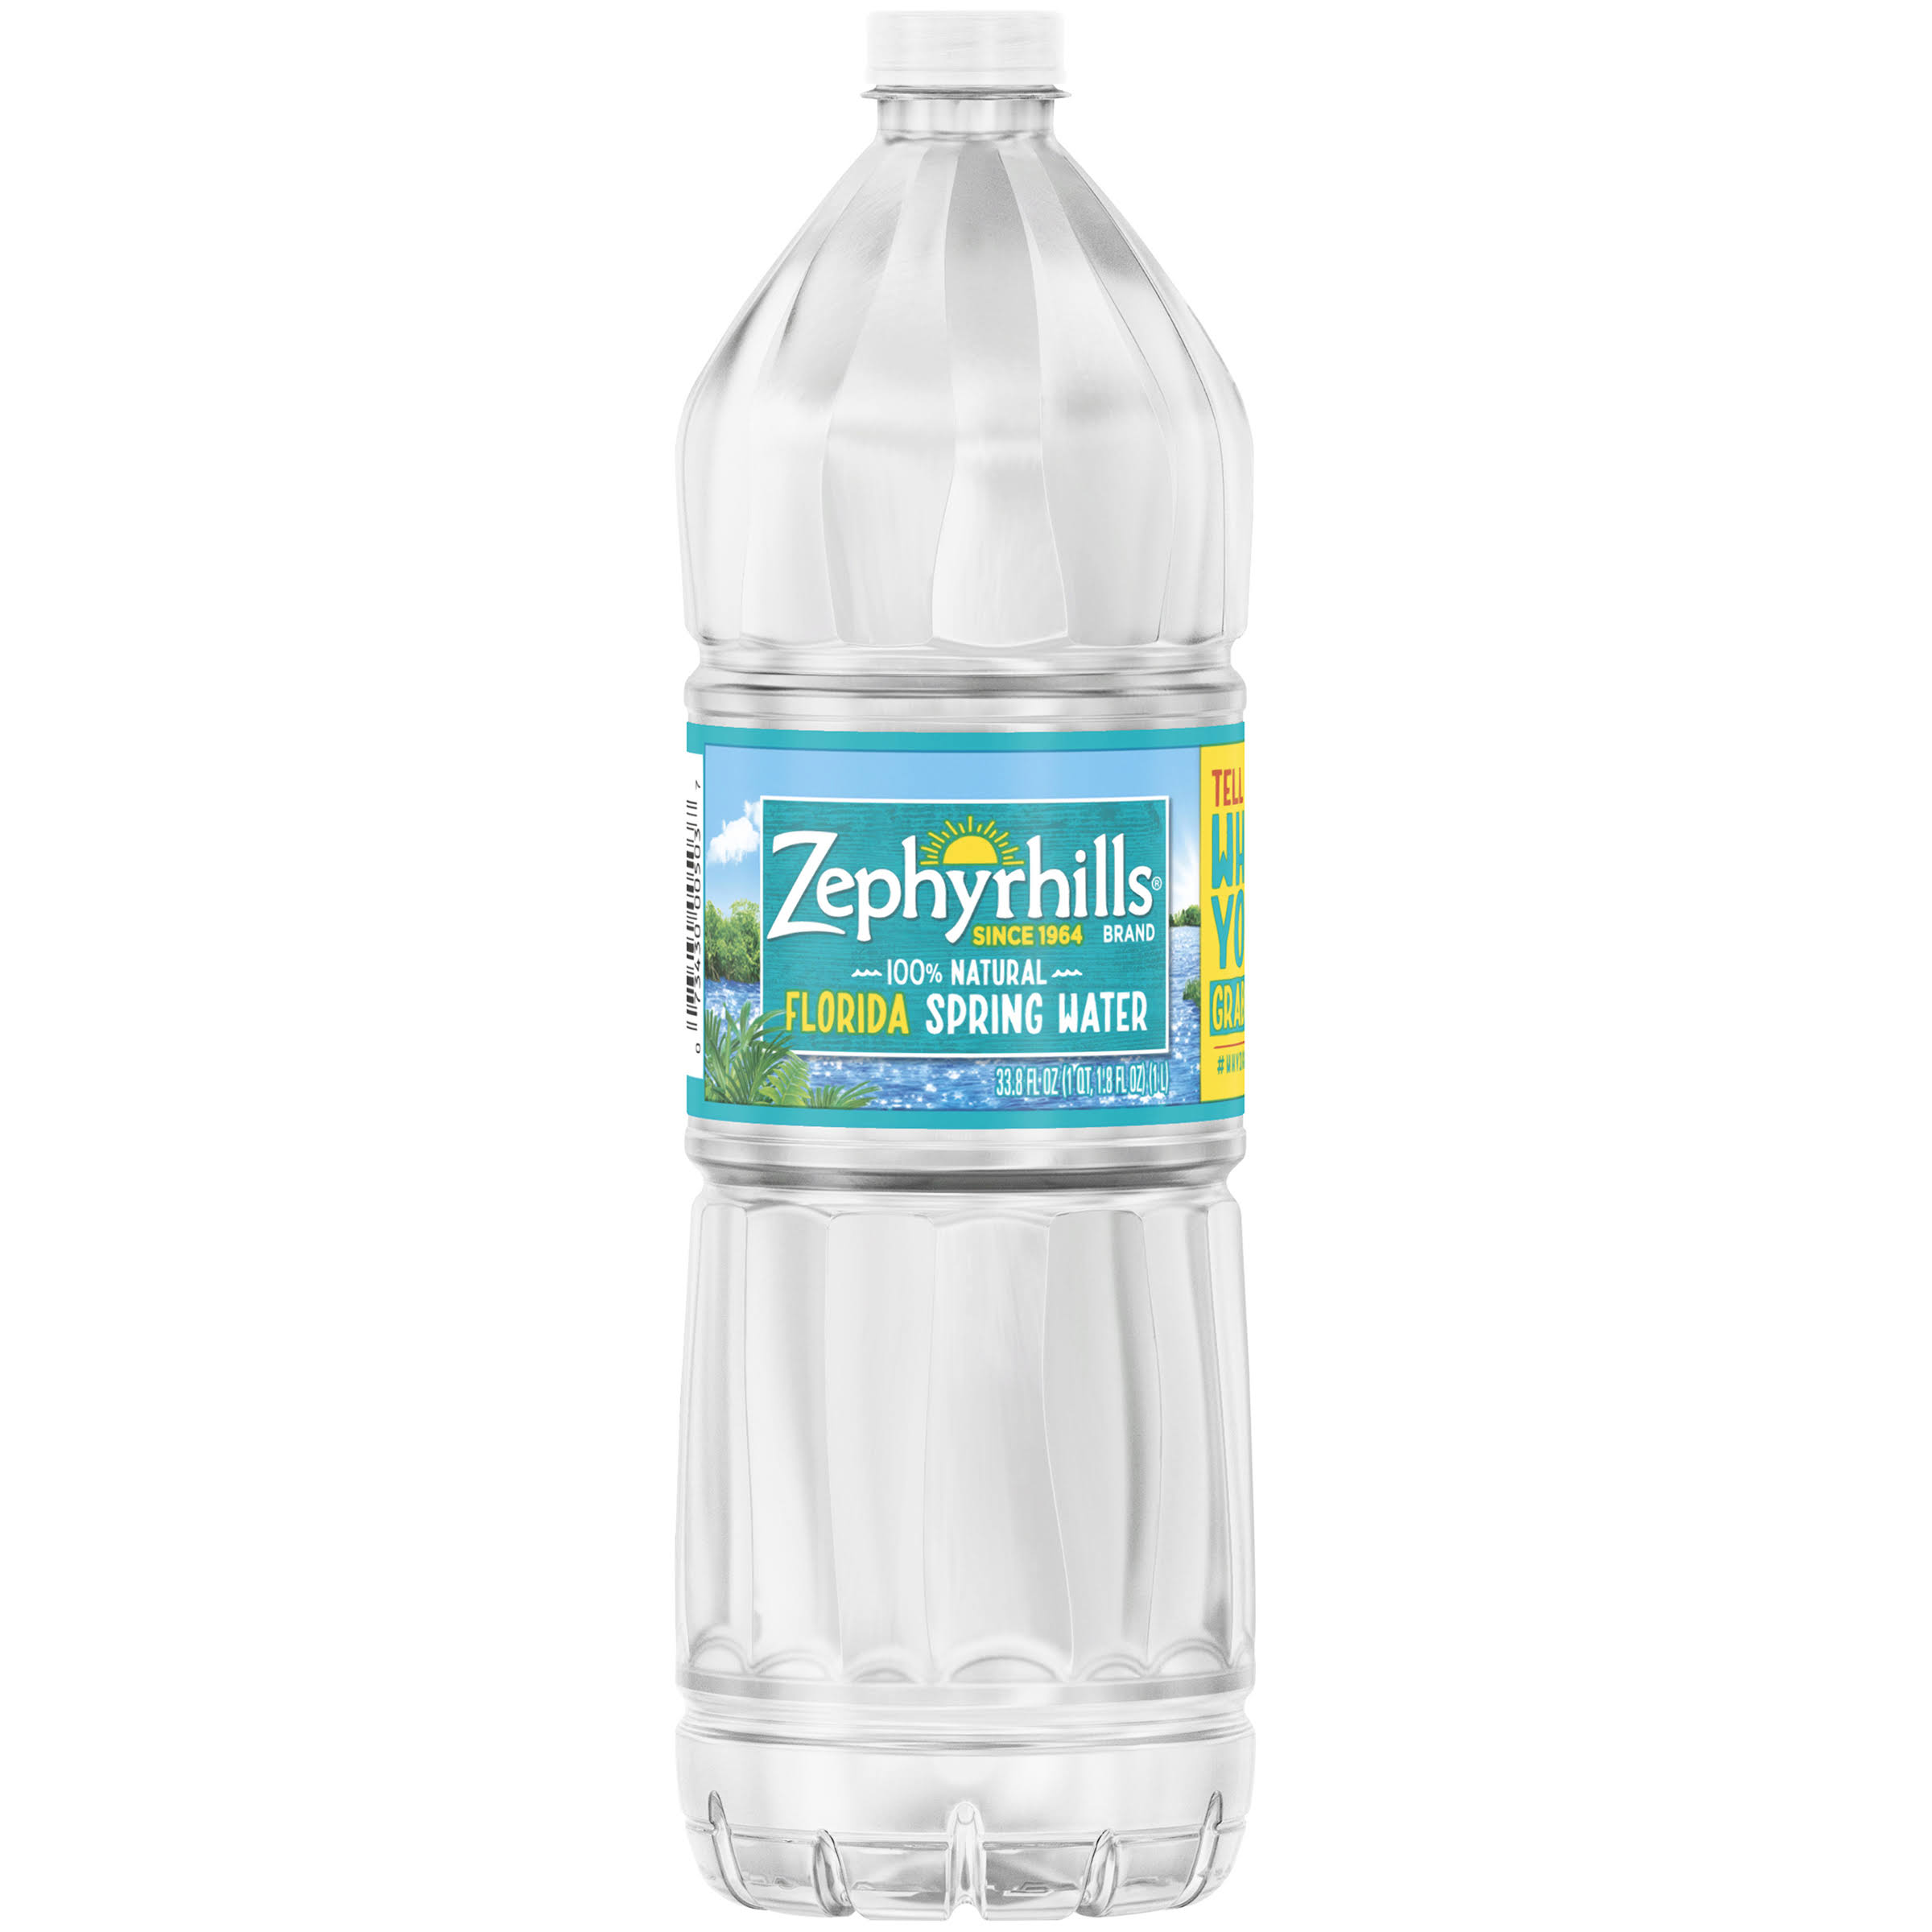 Zephyrhills Spring Water, 100% Natural - 33.8 fl oz